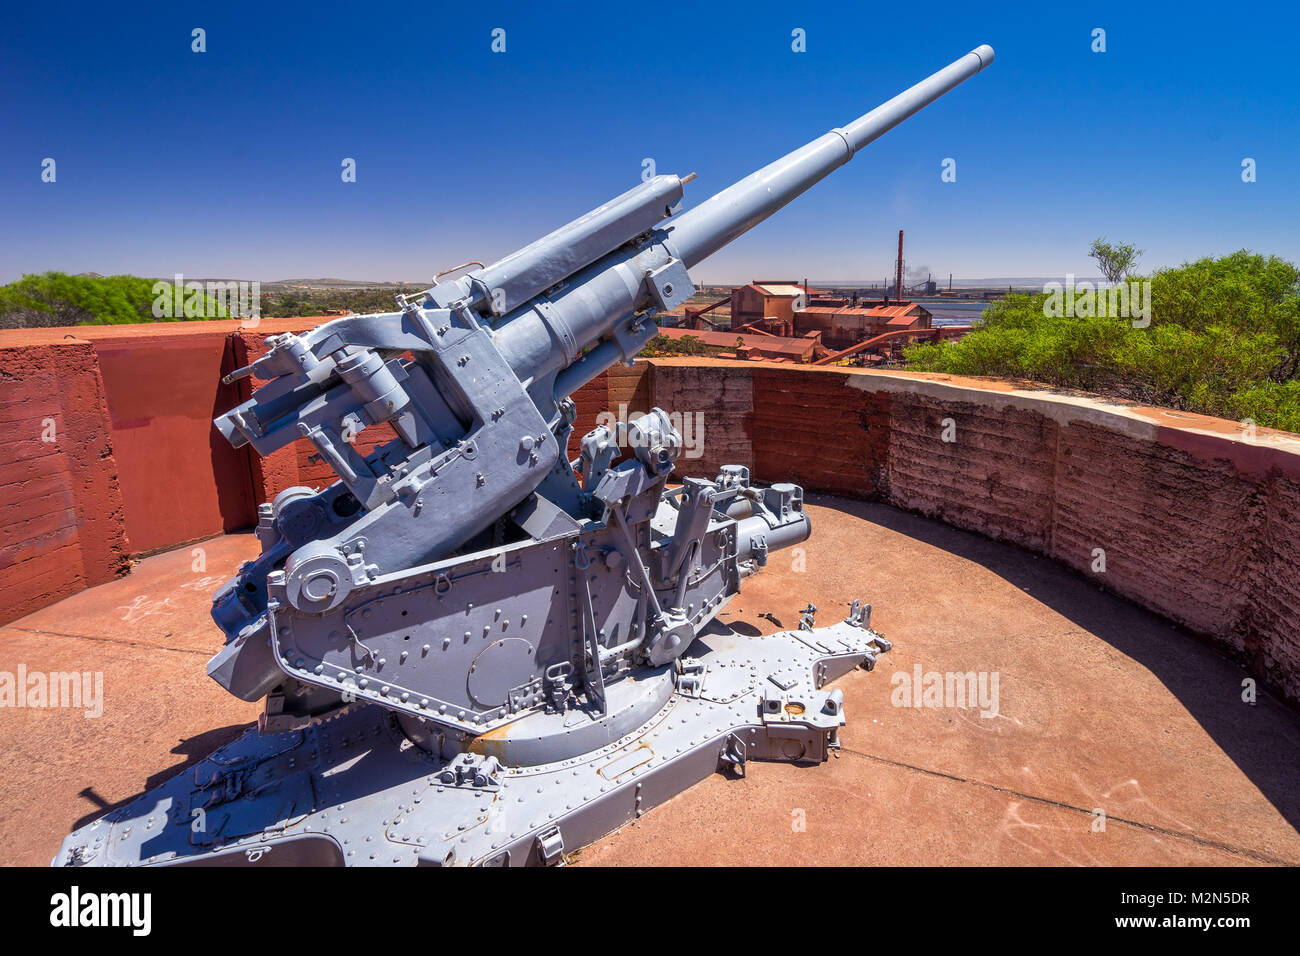 World War 2 anti-aircraft gun Stock Photo